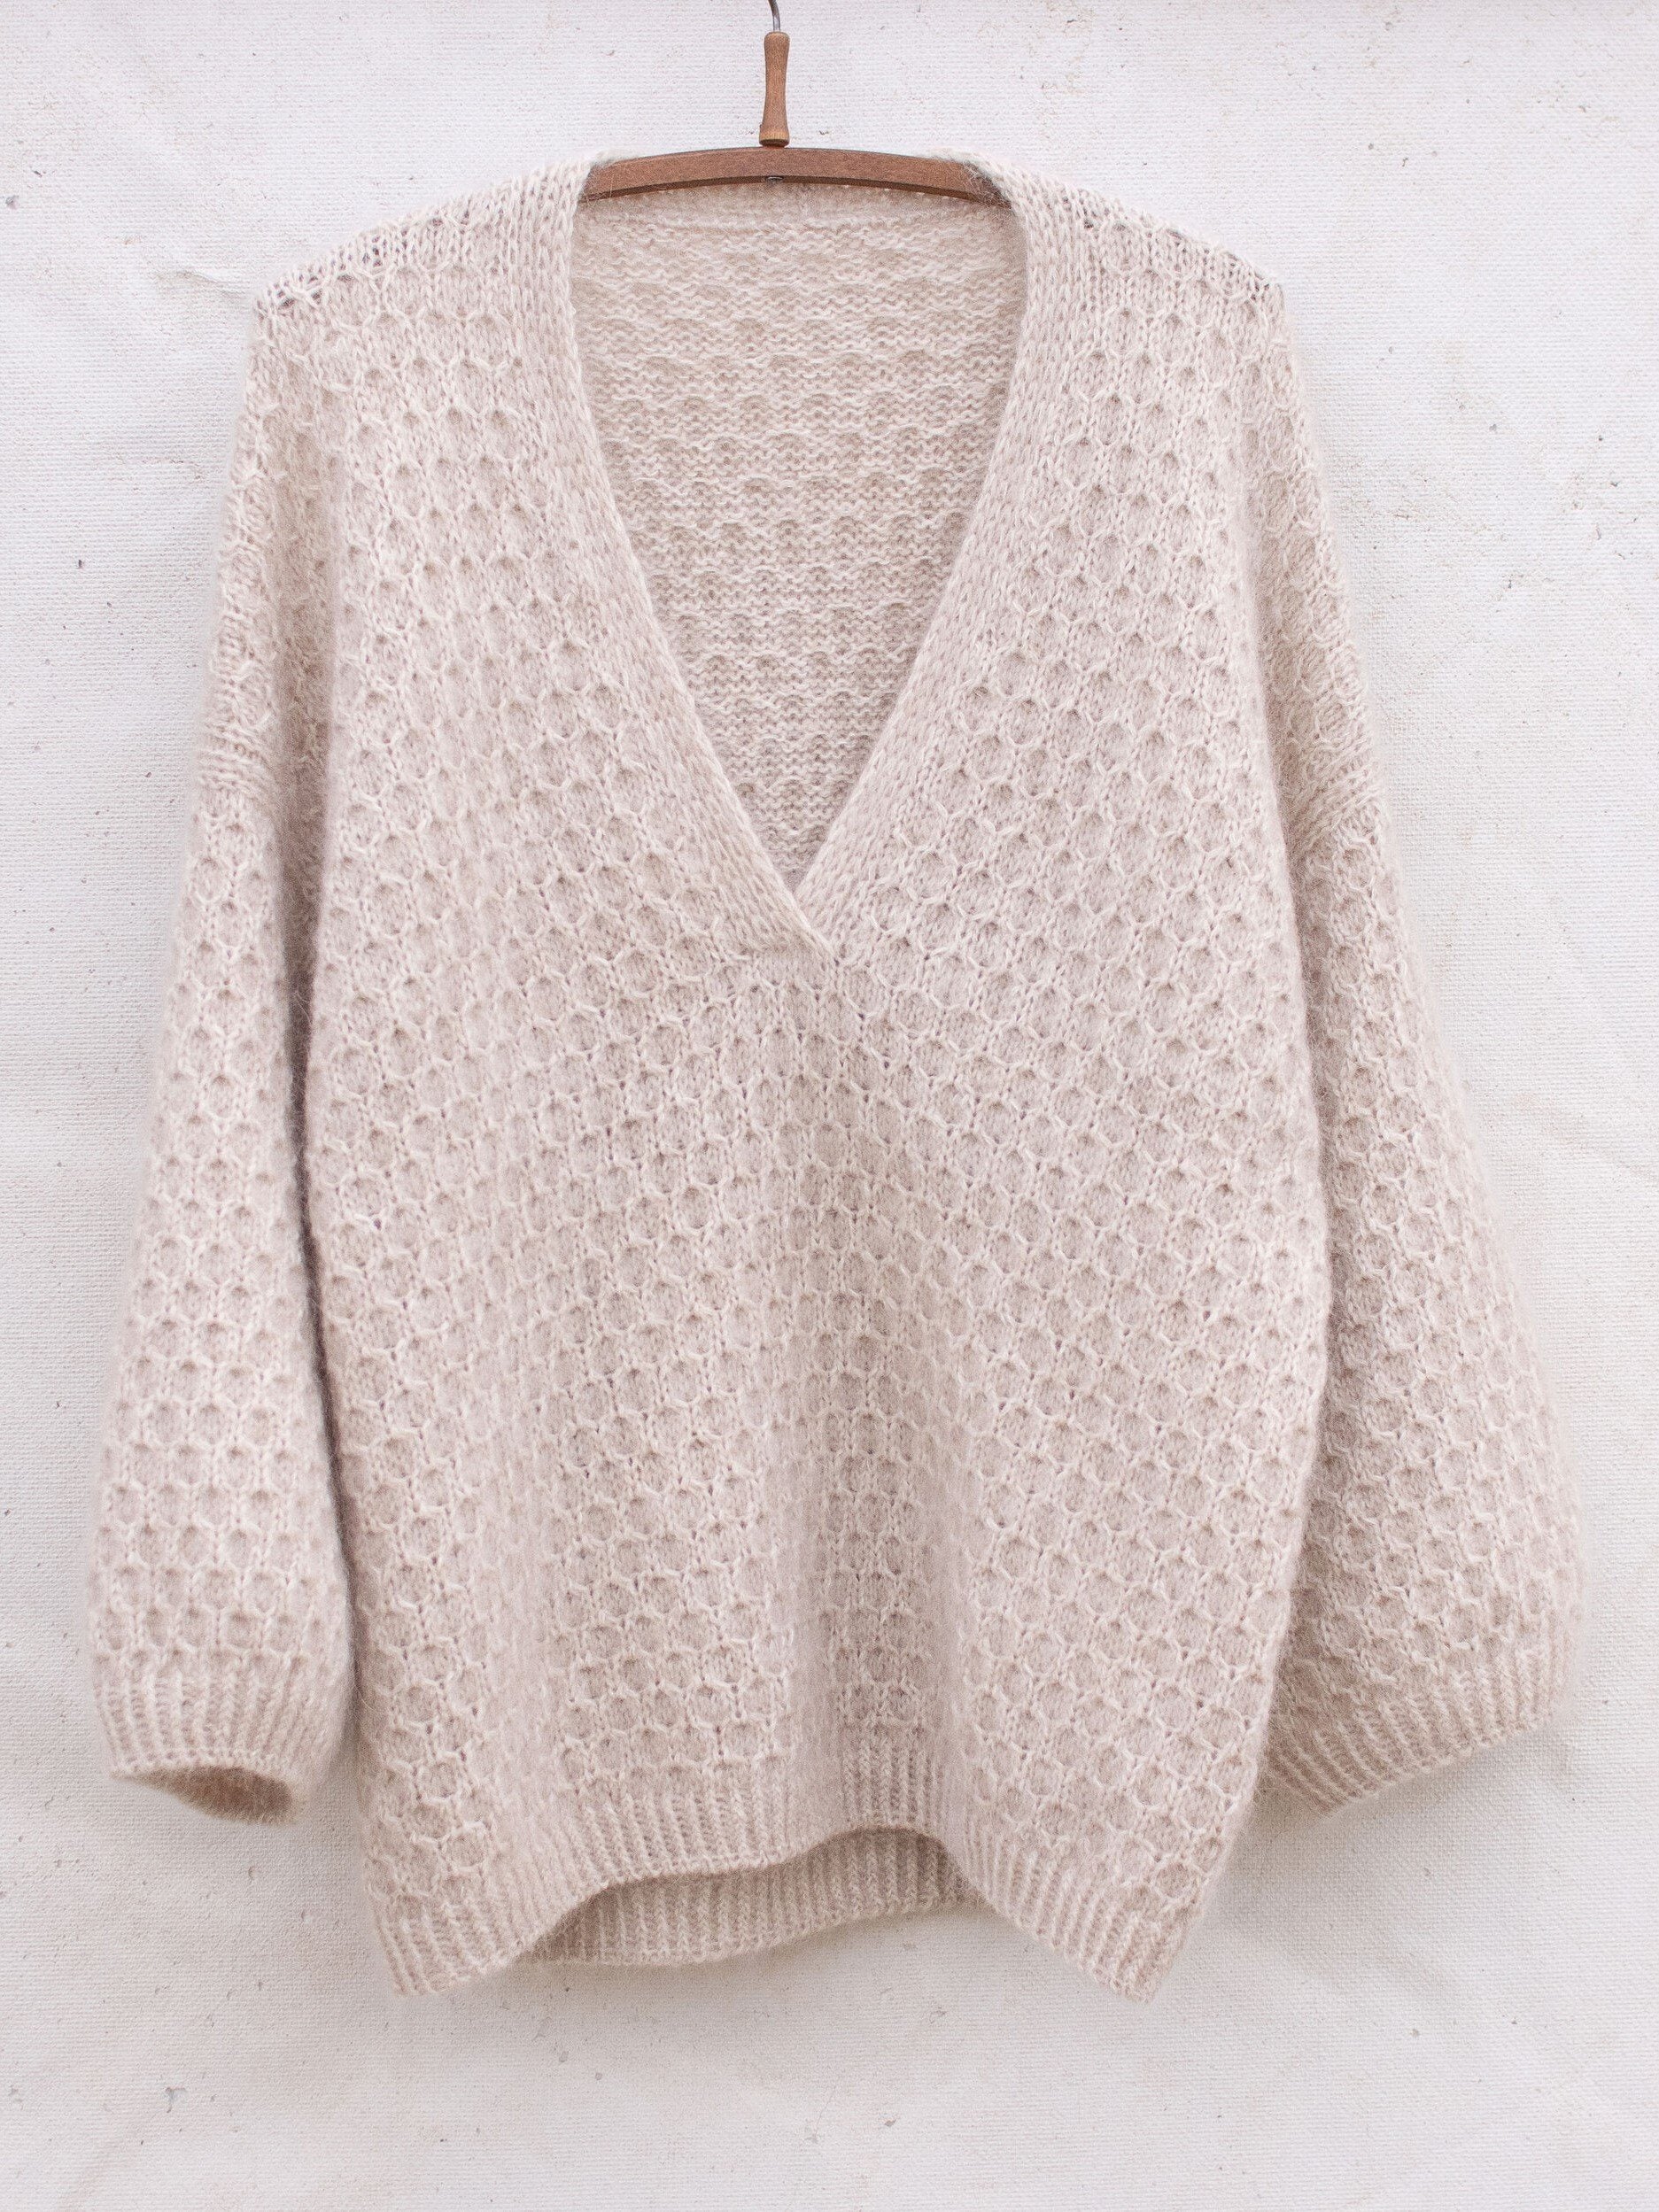 Billede af Cardi V-neck sweater af Anne Ventzel, No 2 + Silk mohair garnpakke (uden opskrift)